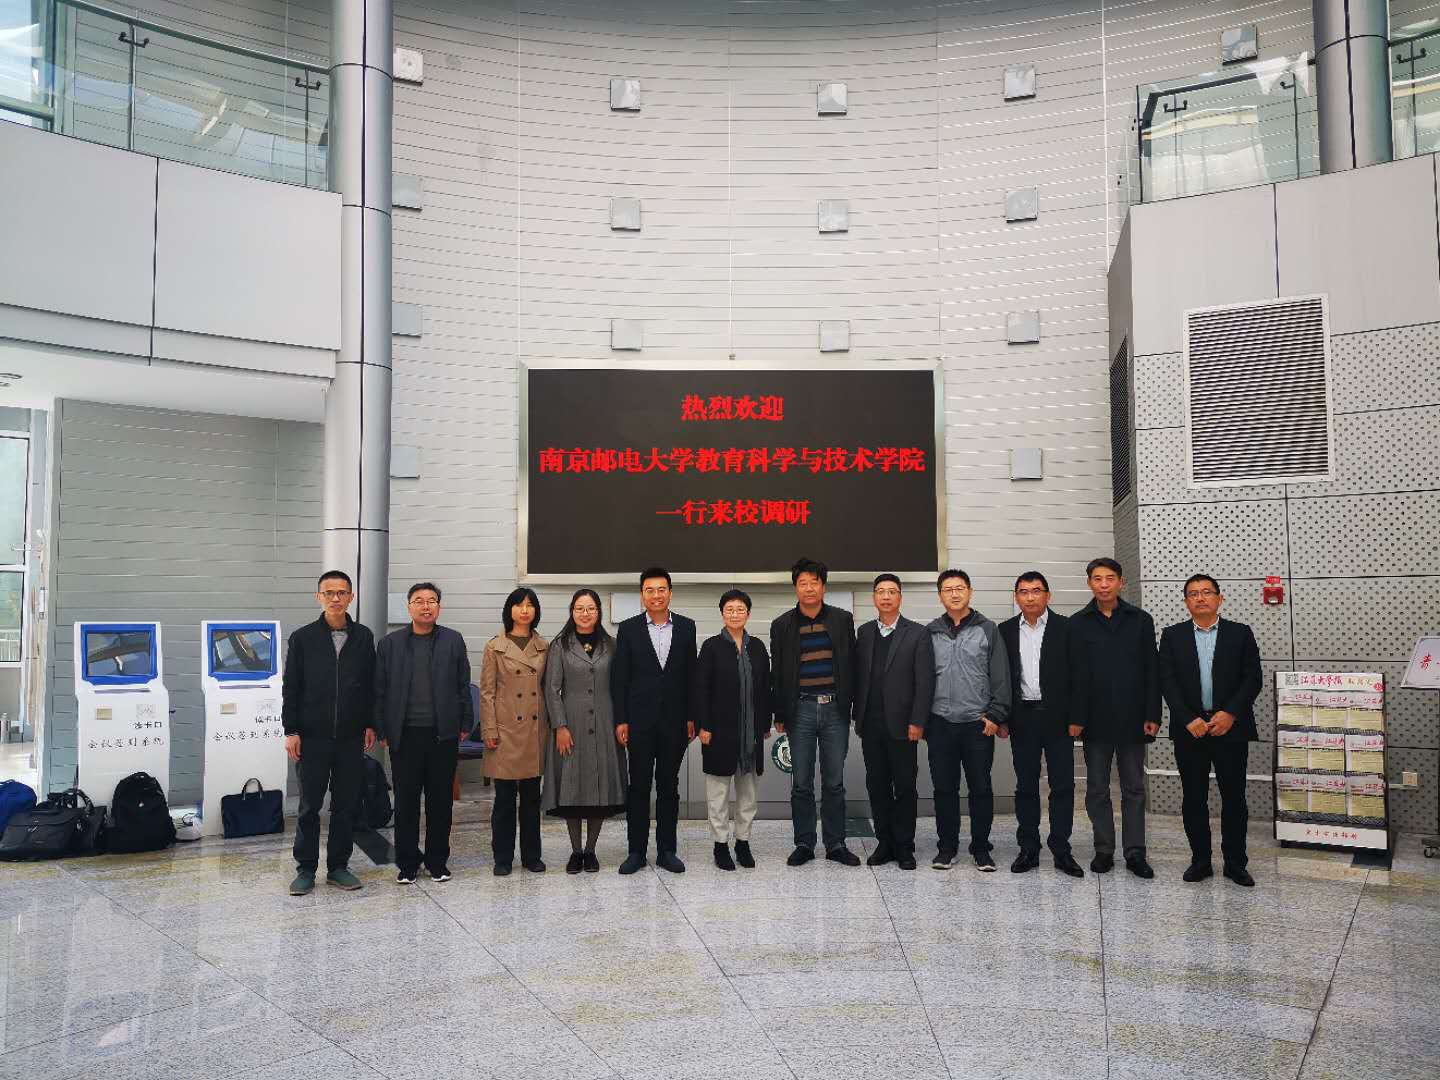 南京邮电大学教育科学与技术学院一行来我院交流